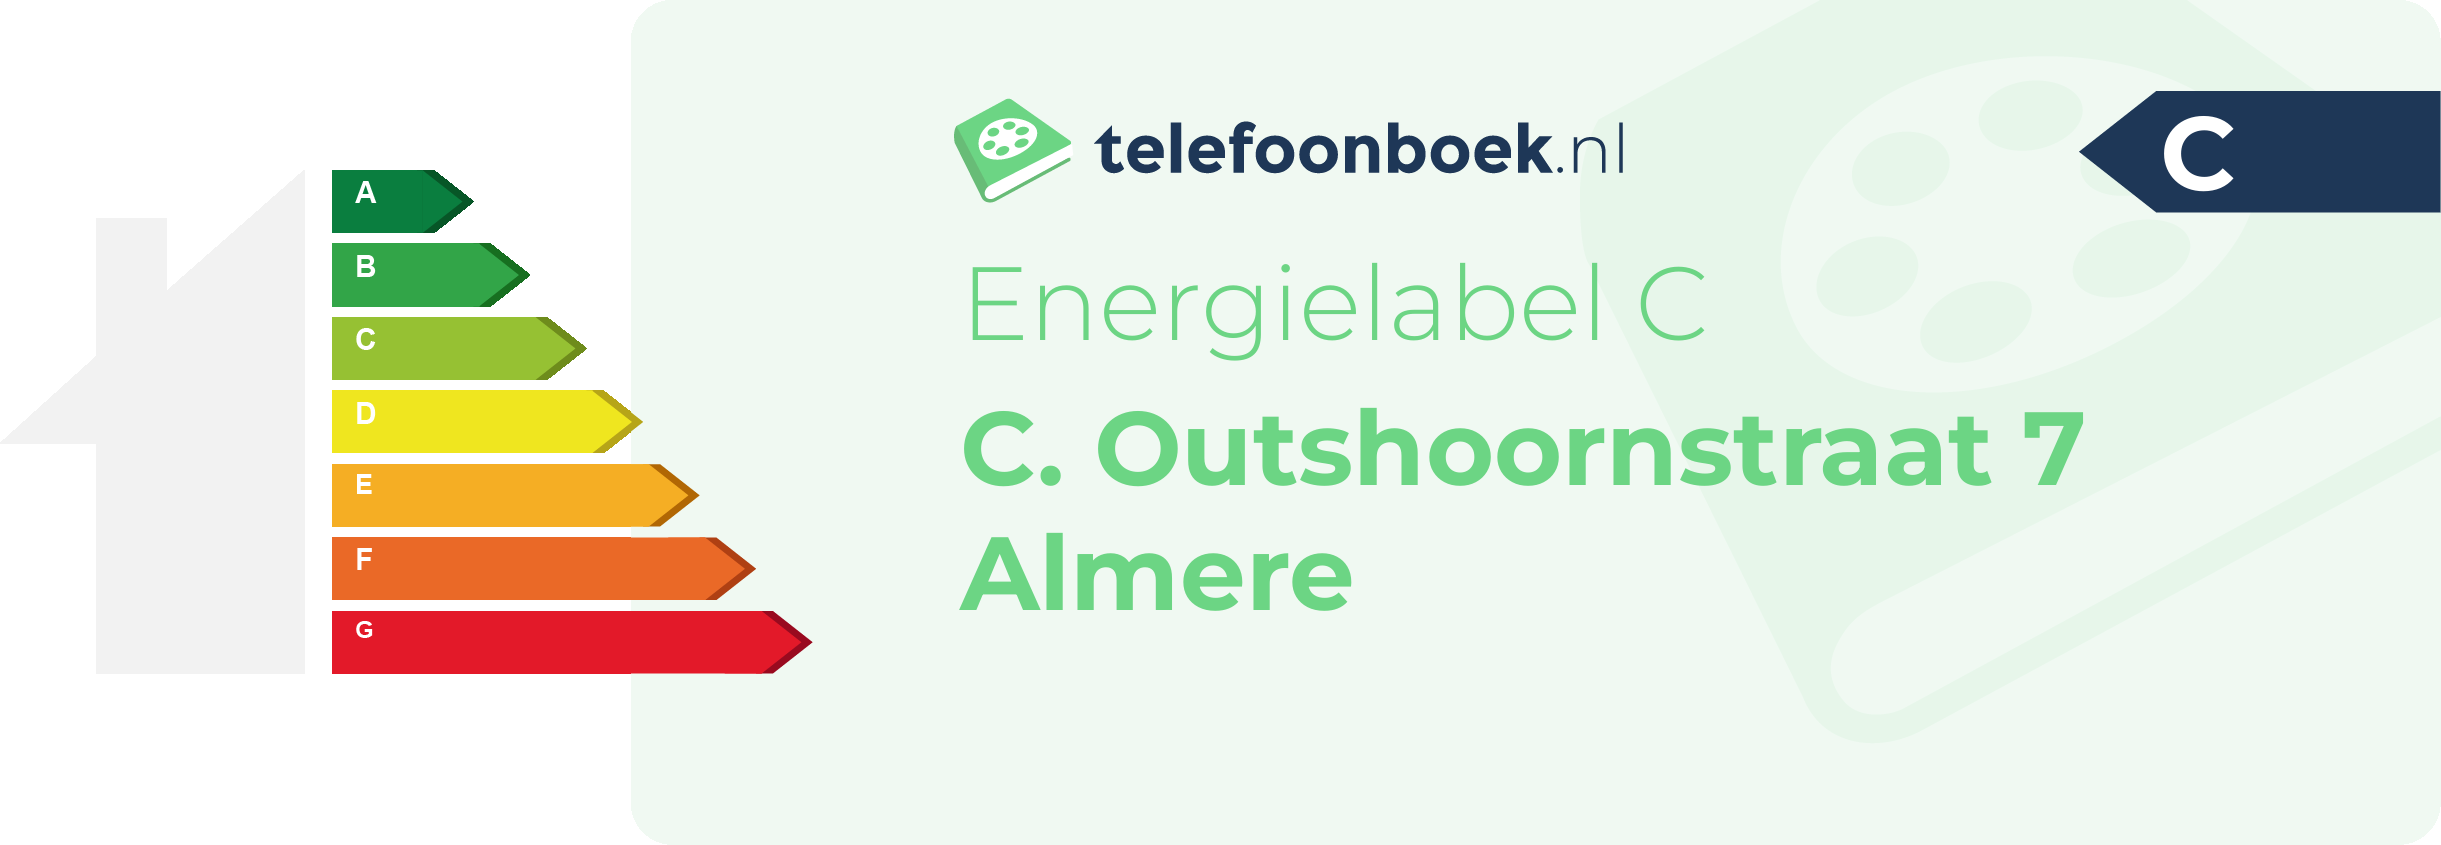 Energielabel C. Outshoornstraat 7 Almere